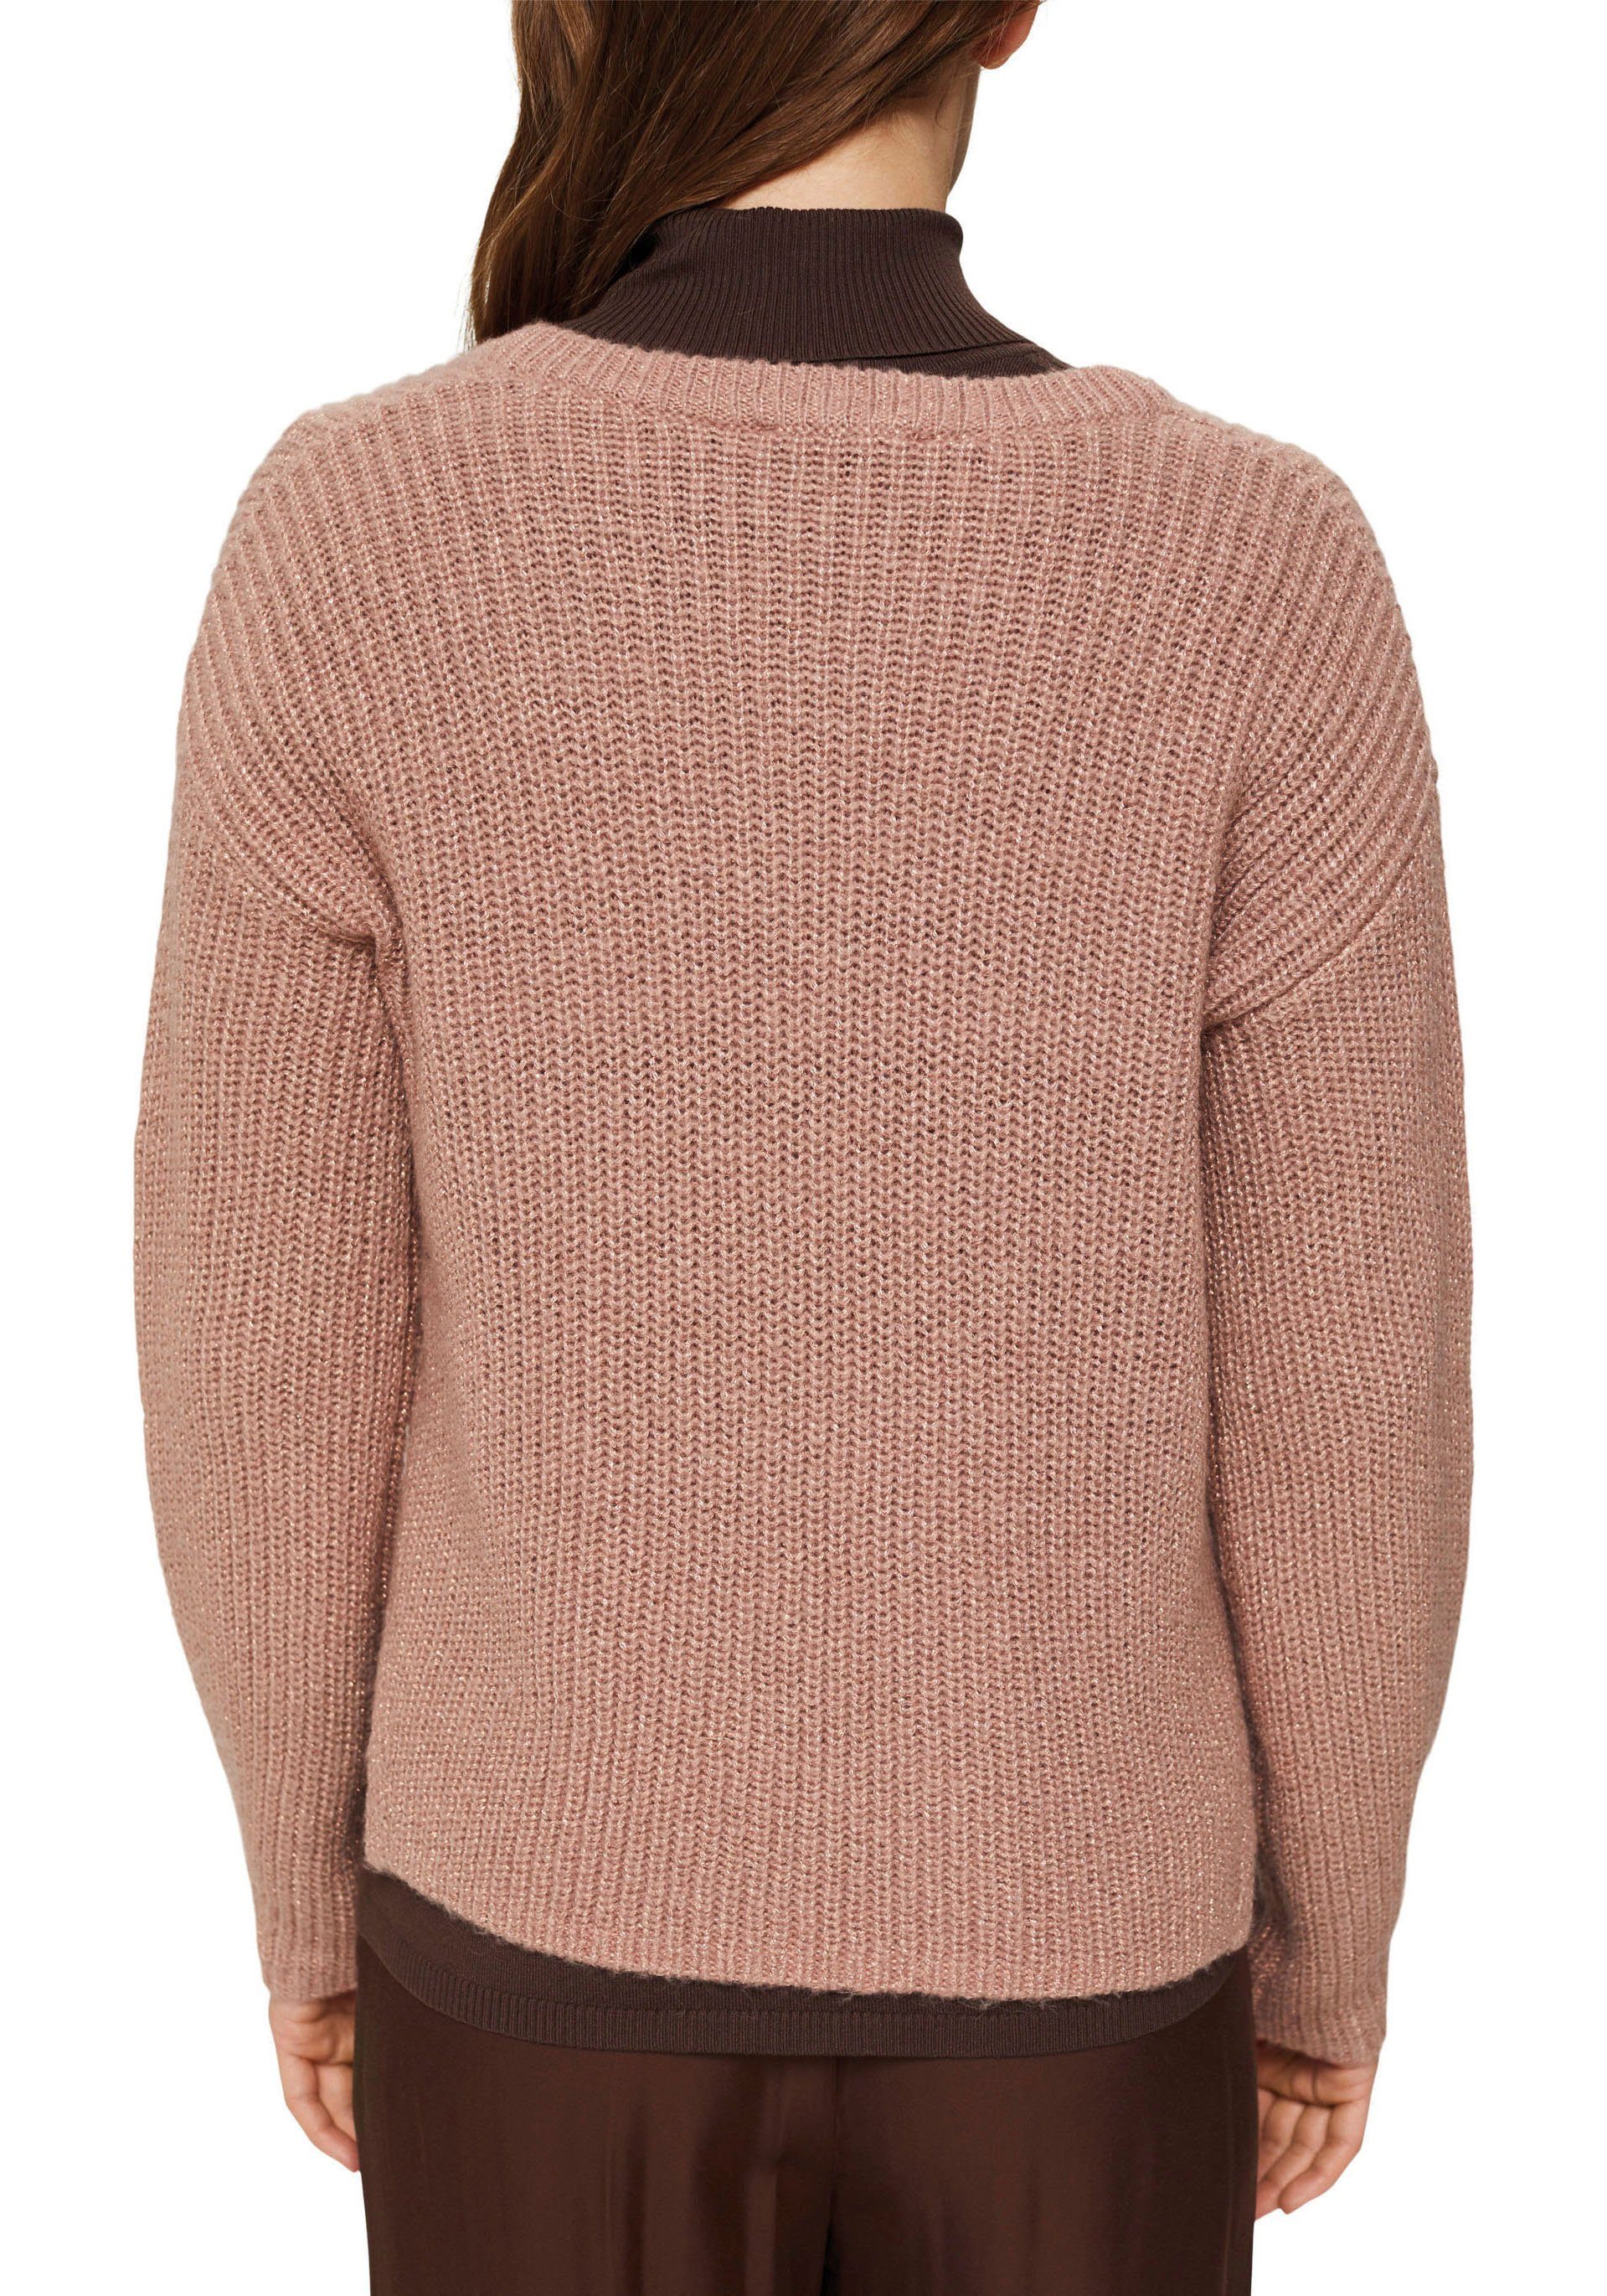 Damen Pullover Esprit Collection V-Ausschnitt-Pullover als klassisches Basic für winterliche Looks